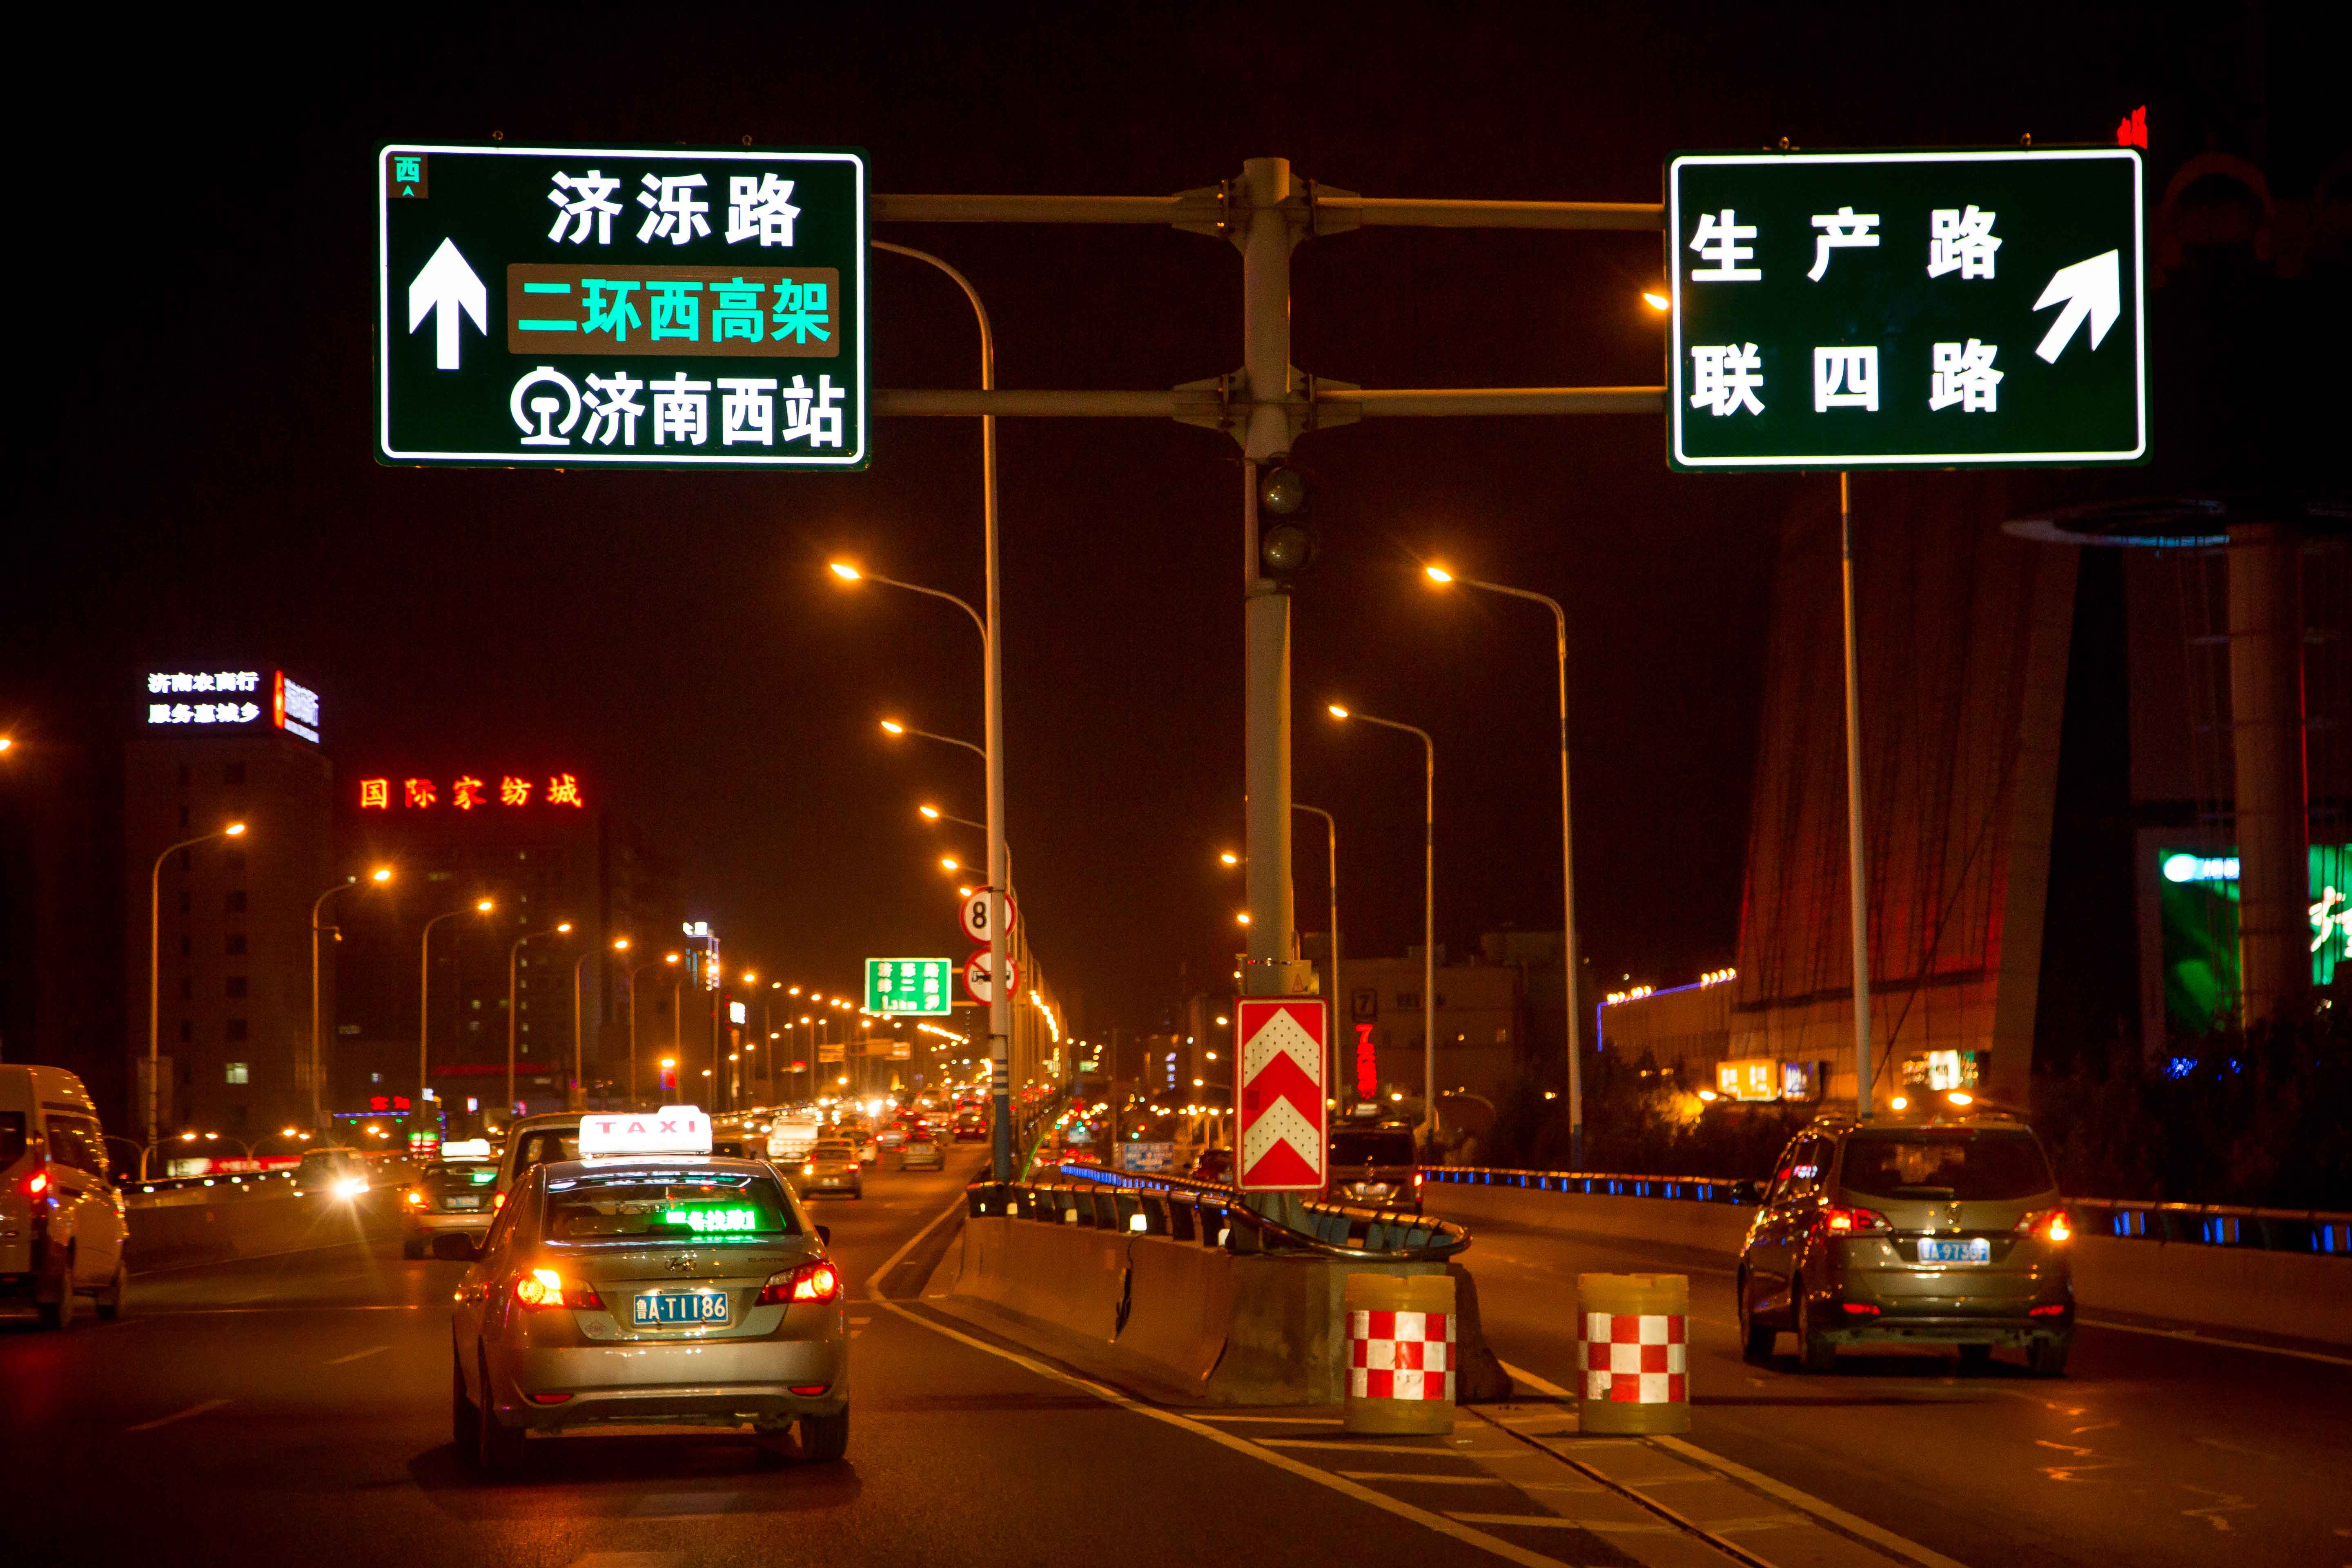 重磅!南京都市圈将建高速环线公路,句容有望搭乘“快车”_房产资讯_房天下